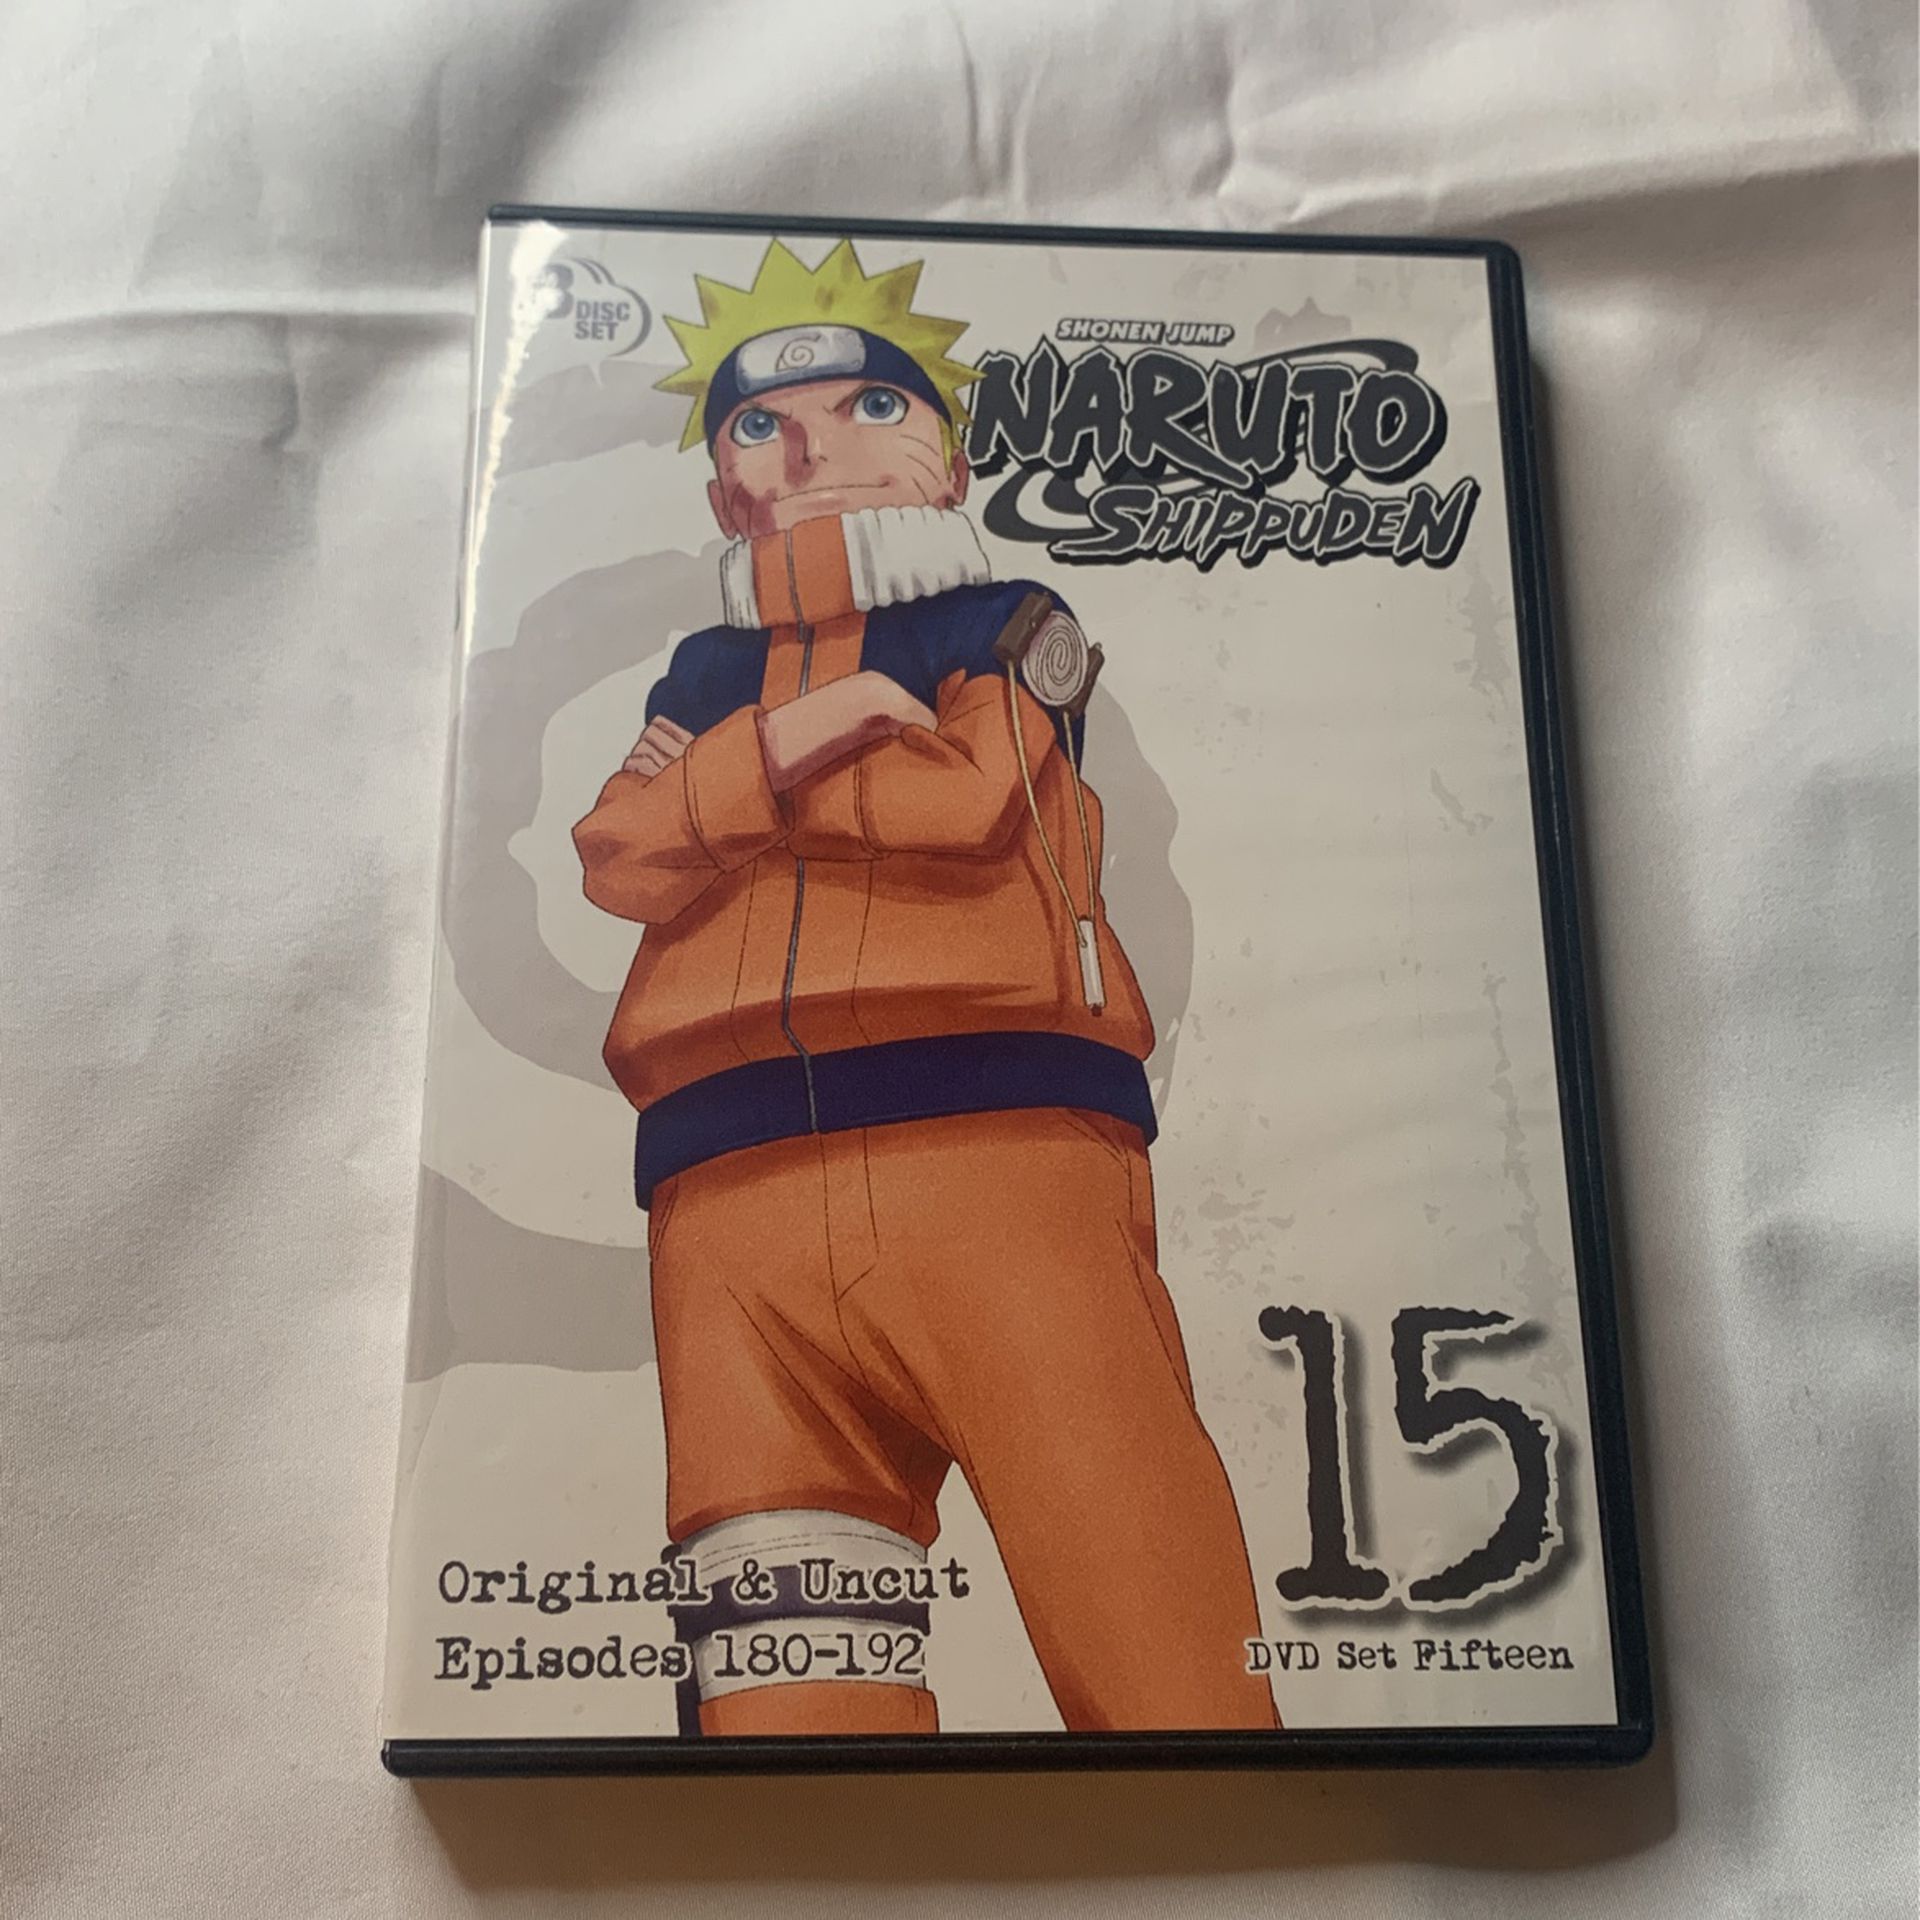 Naruto Shippuden Box Set 15